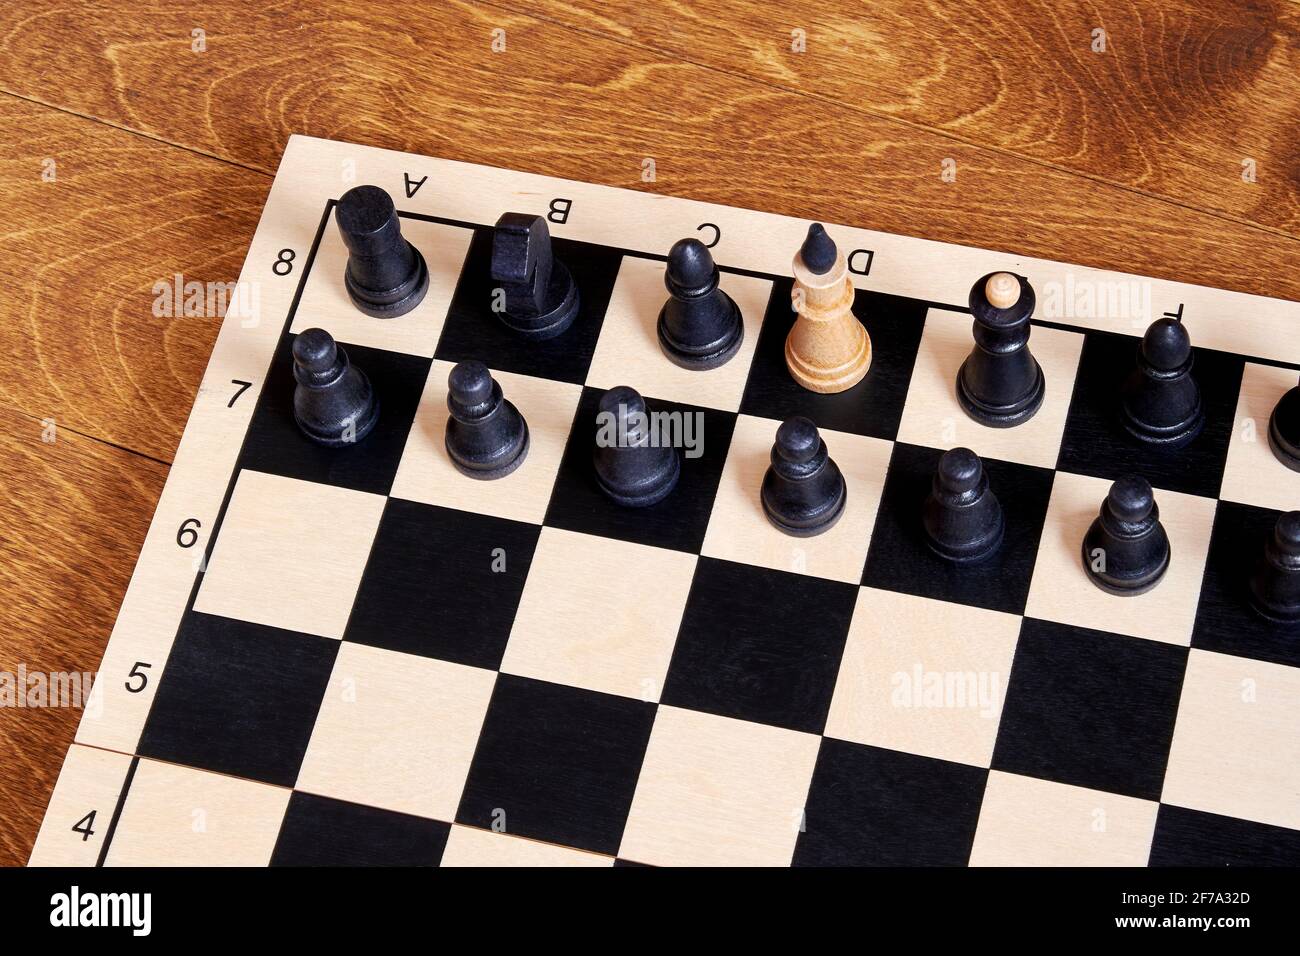 Image conceptuelle d'un traître et d'un espion au gouvernement basée sur des pièces d'échecs. Symbole et concept d'un espion et d'un agent double Banque D'Images